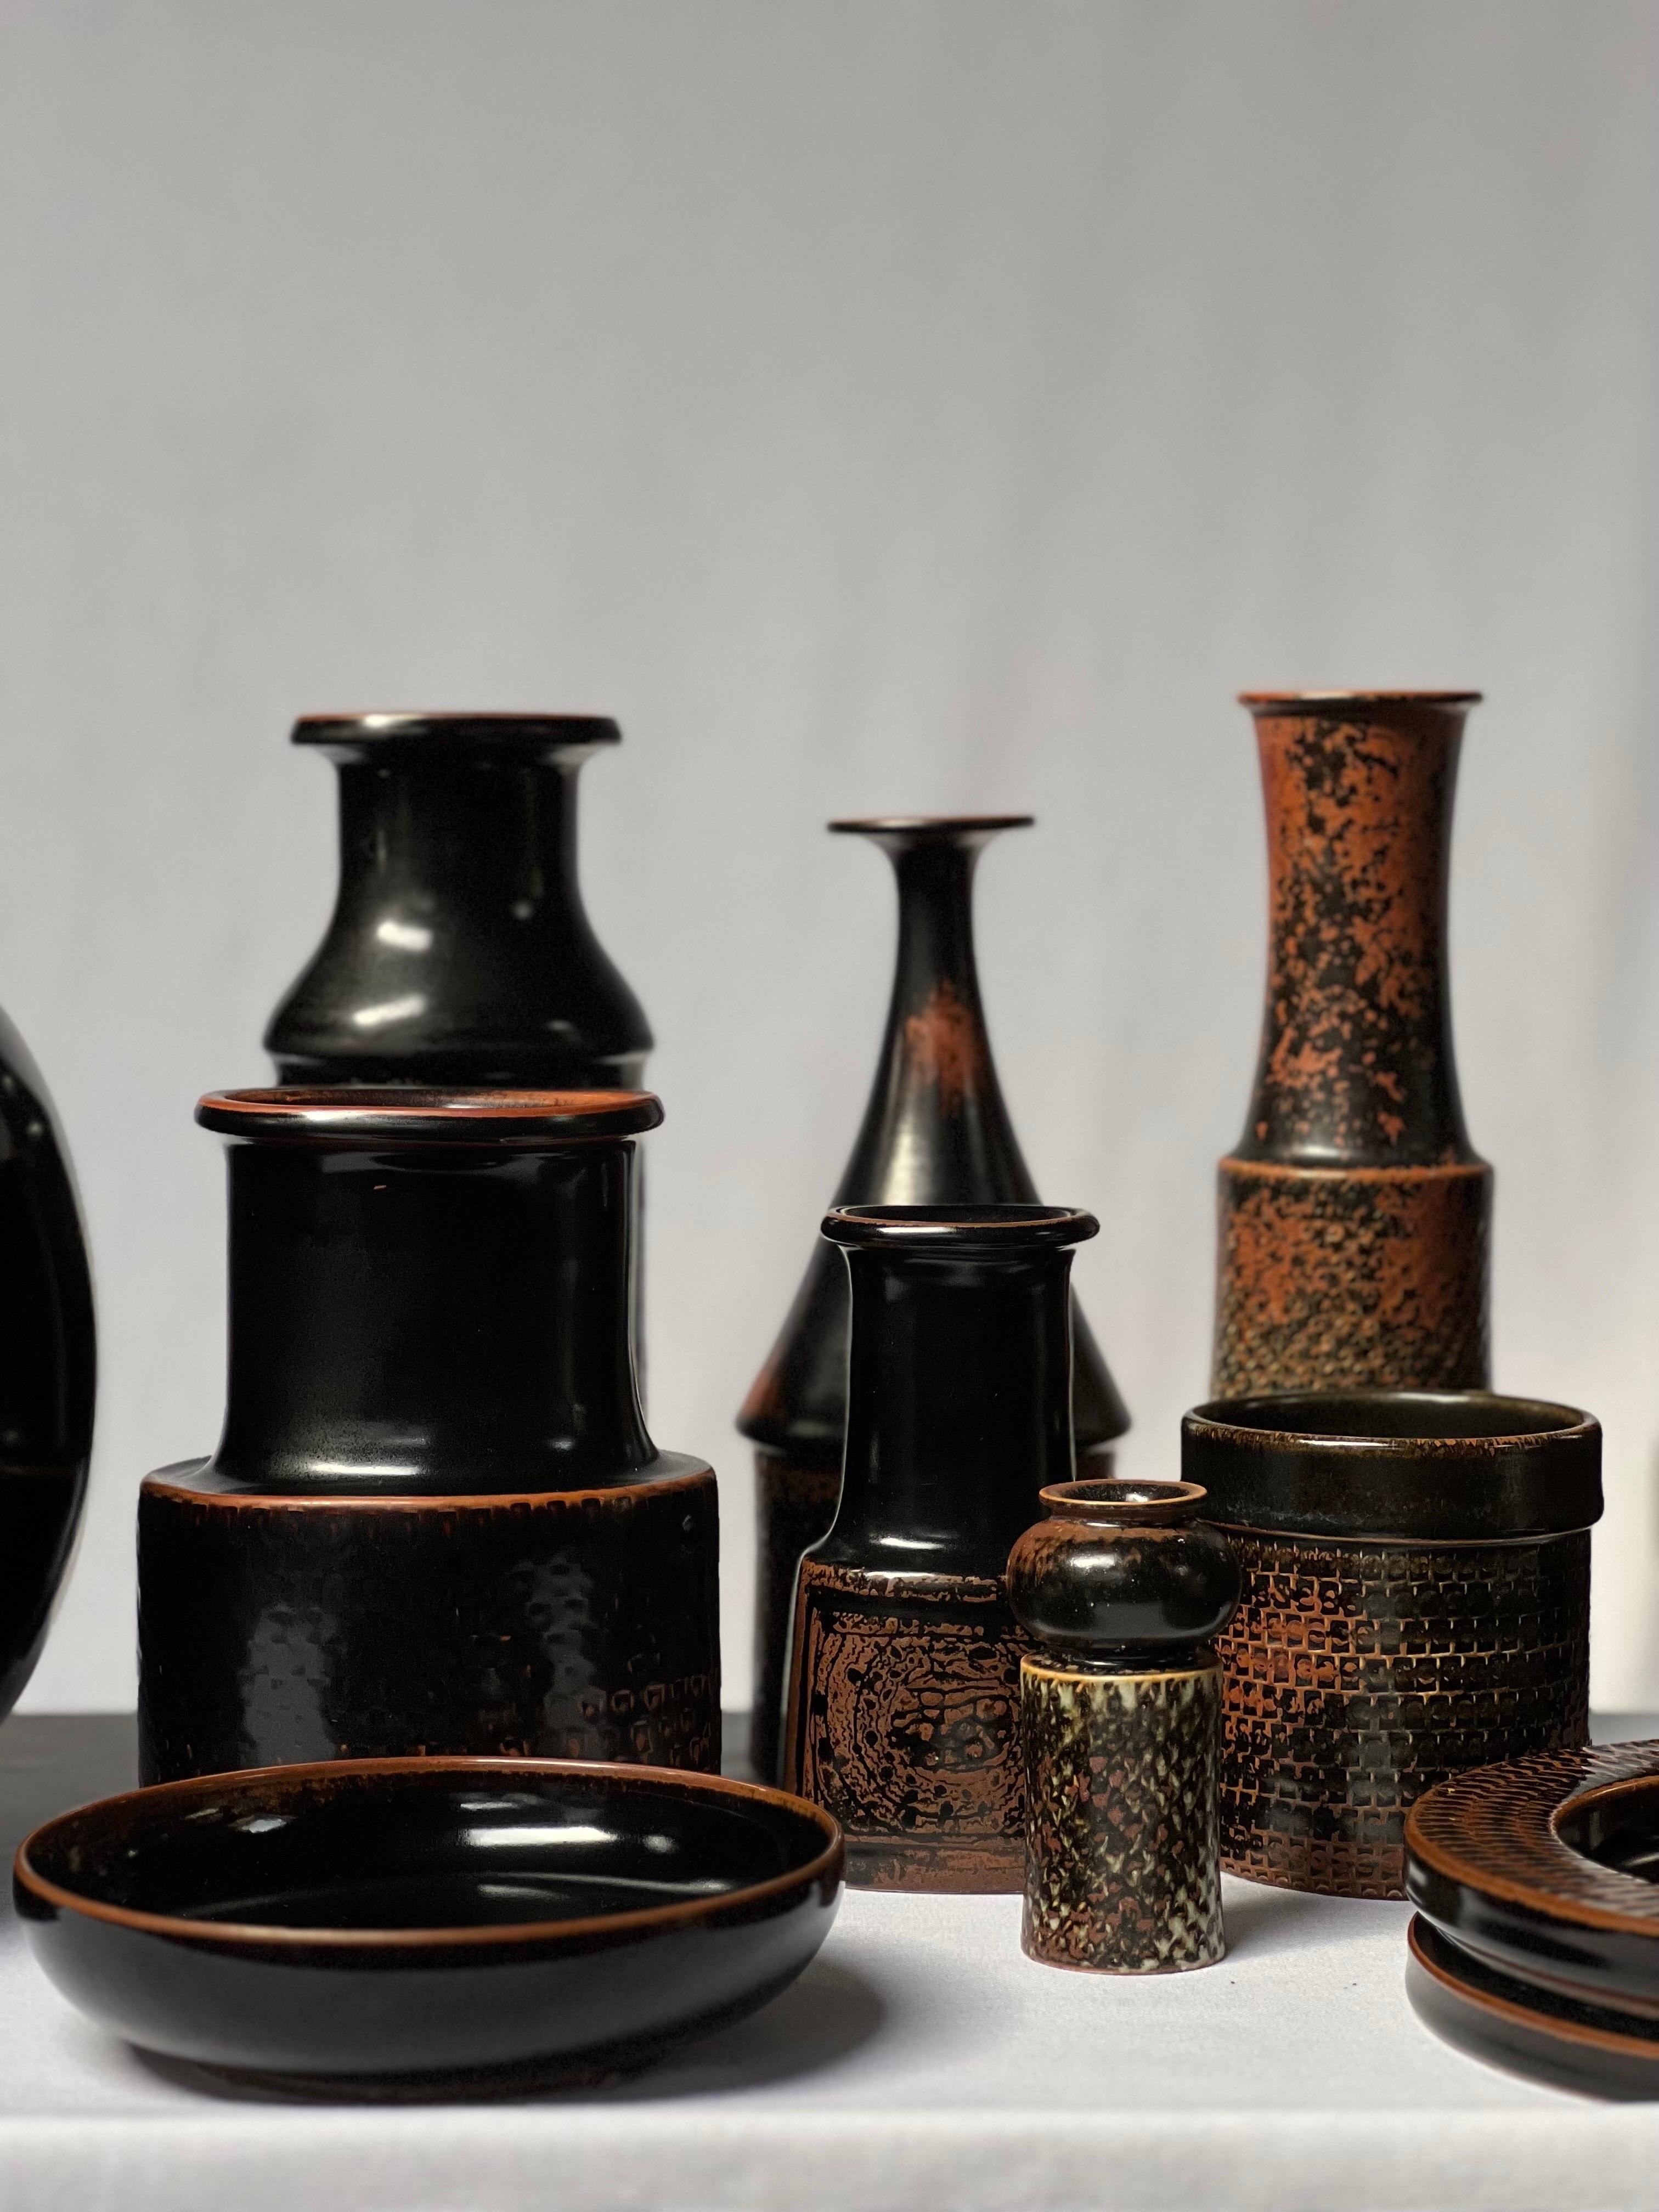 Stig Lindberg Unique Vase in black Glaze Tenmoku Made by Hand Sweden 1968 For Sale 6